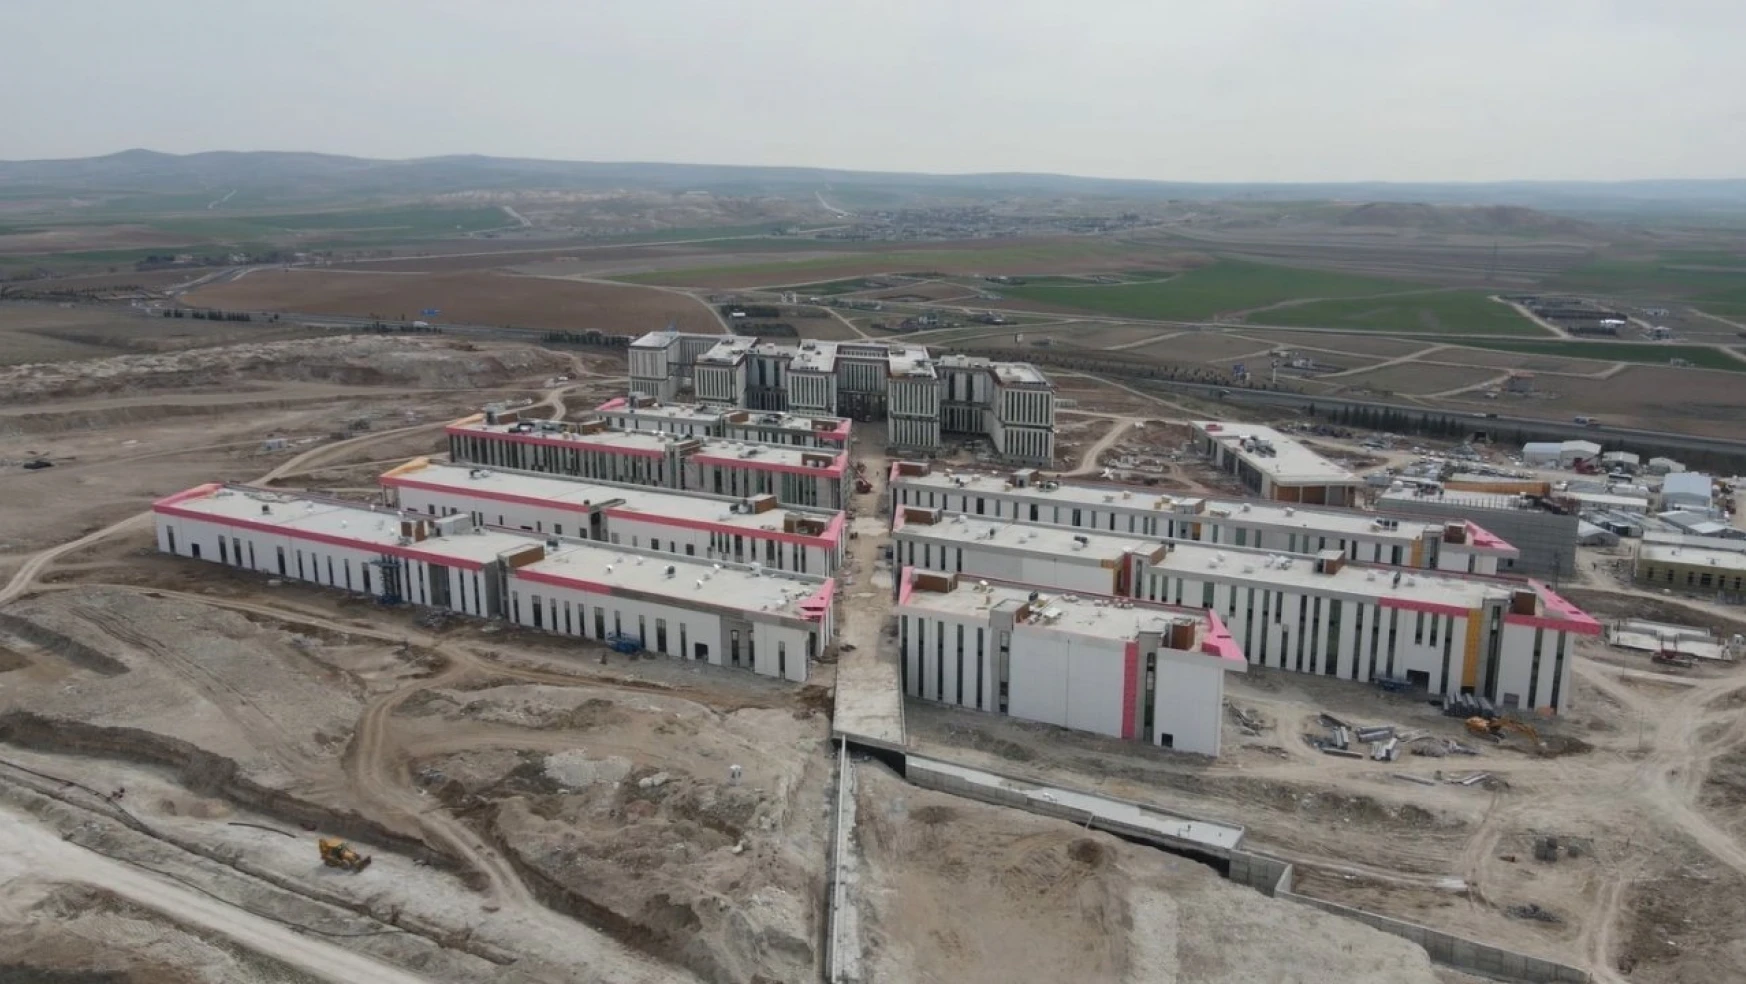 TSE Ankara Kalite Kampüsü'nün inşaatı yüzde 80 seviyesine ulaştı